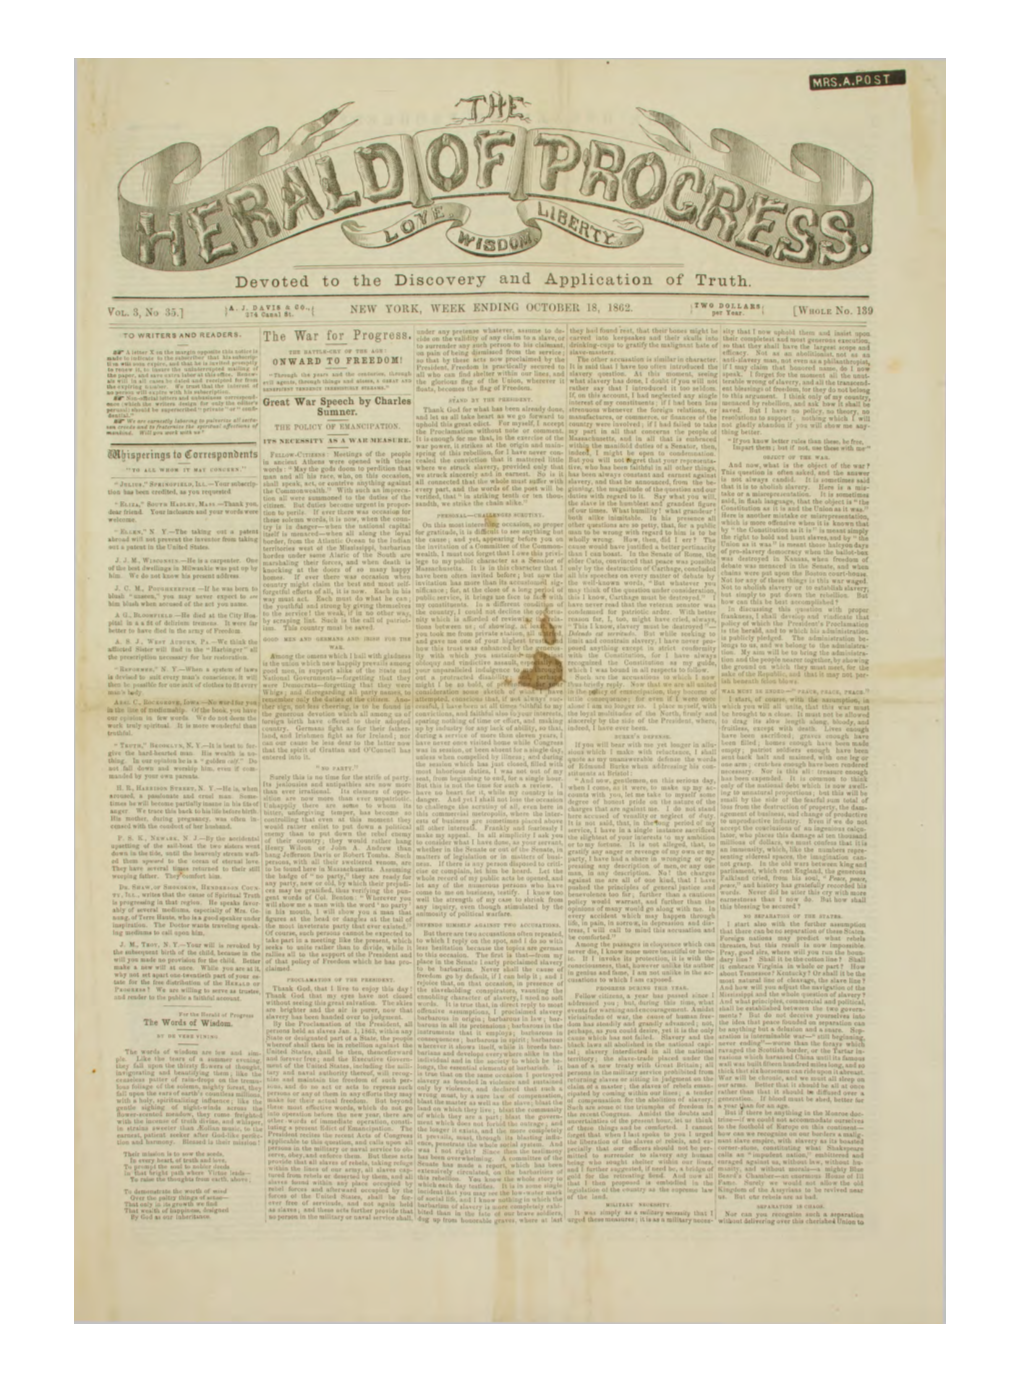 Herald of Progress V3 N35 Oct 18 1862